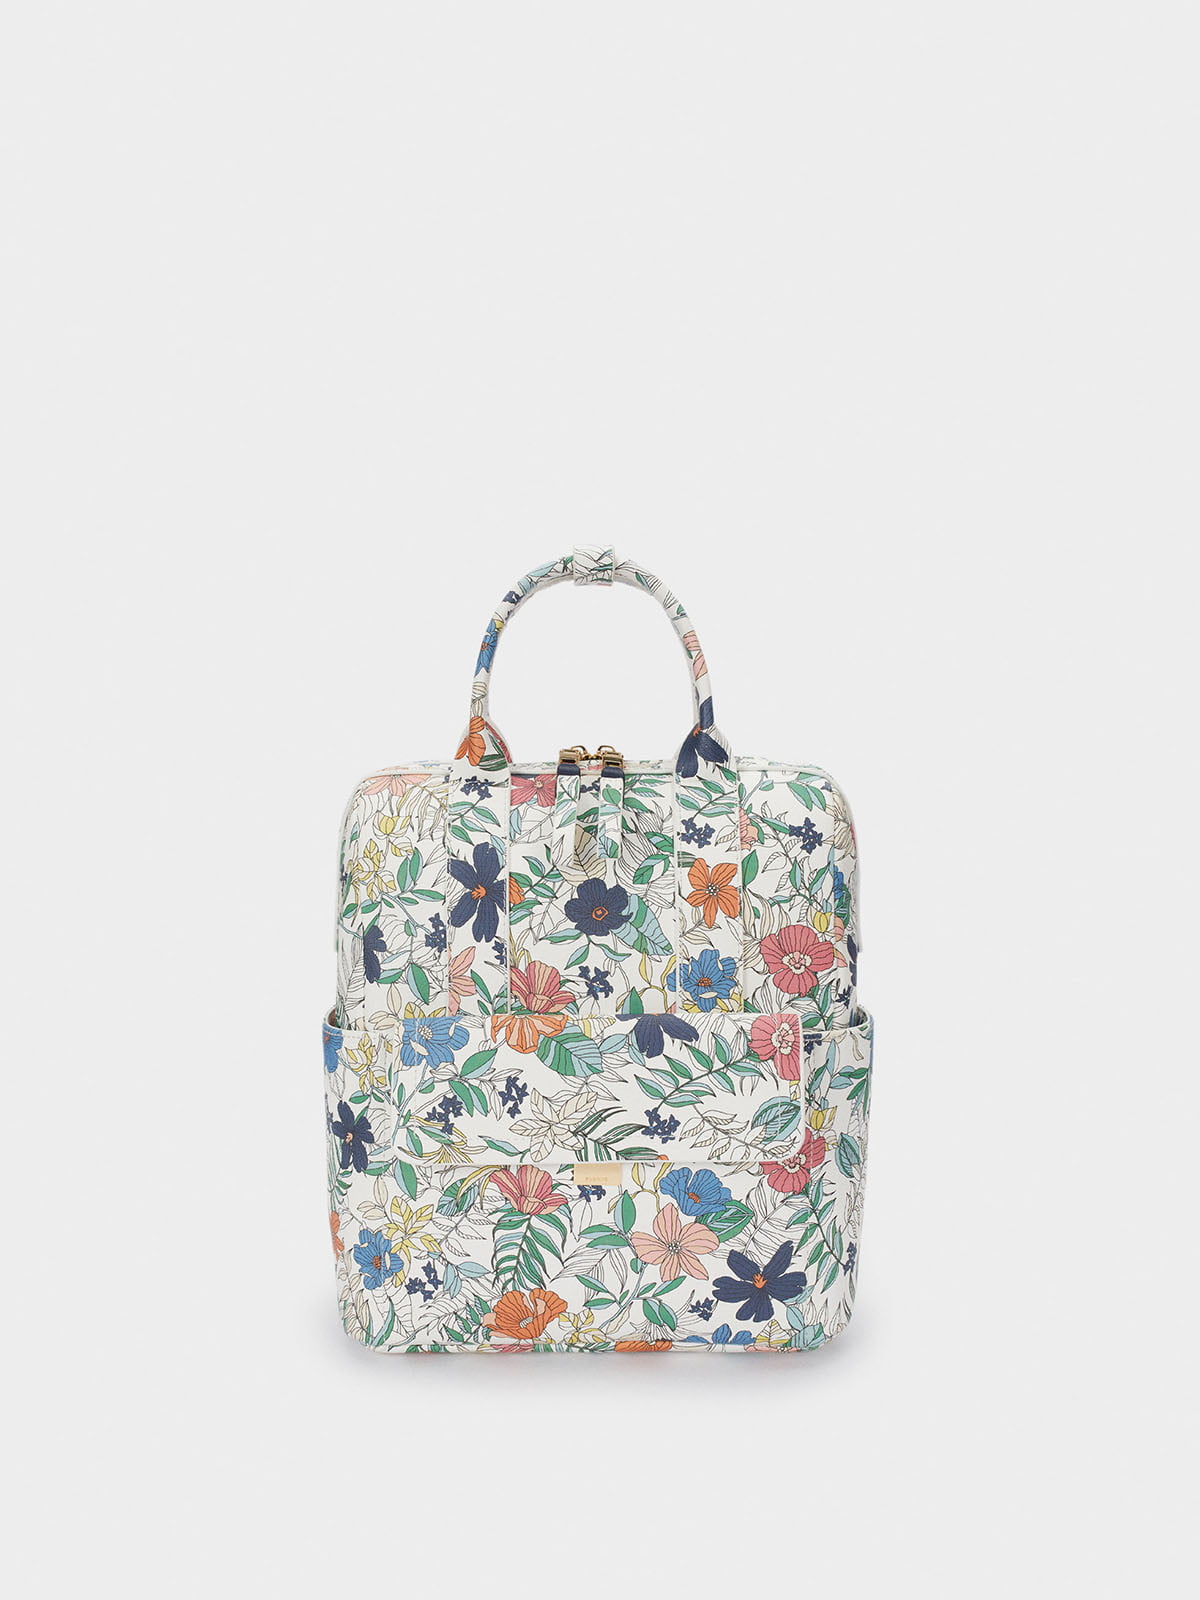 Рюкзак комбинированной расцветки | 5769633